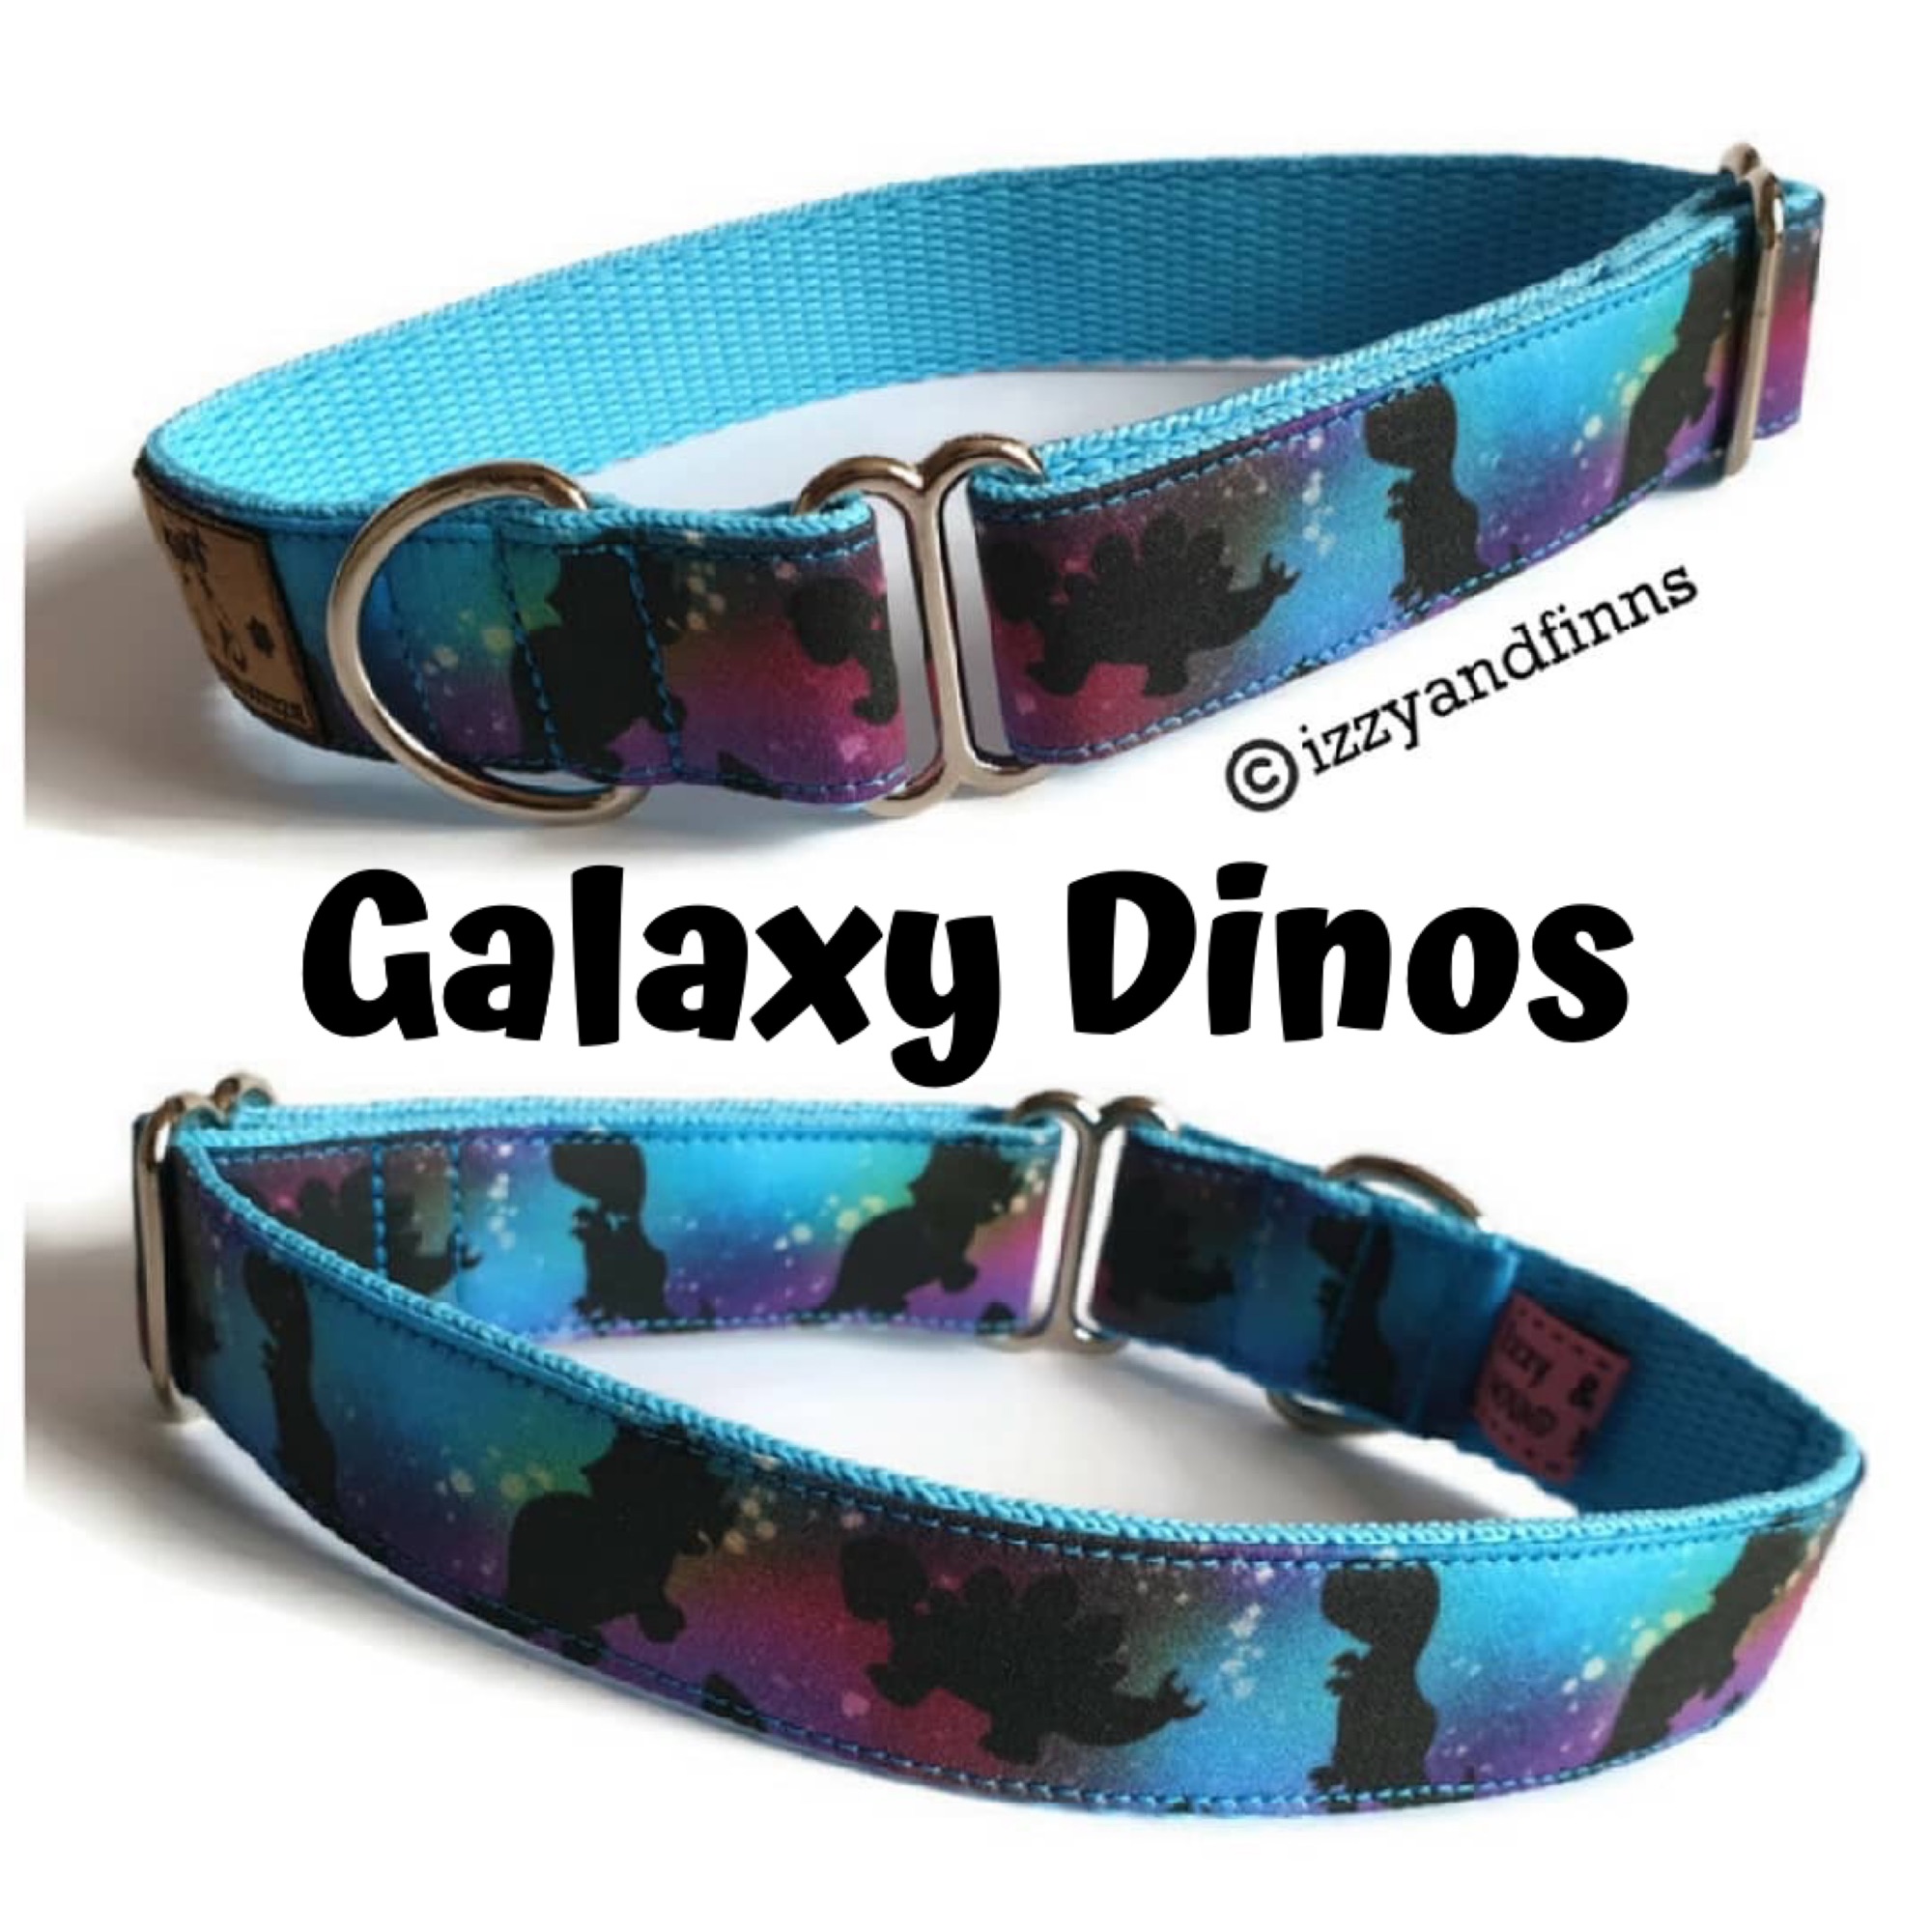 Galaxy Dinos